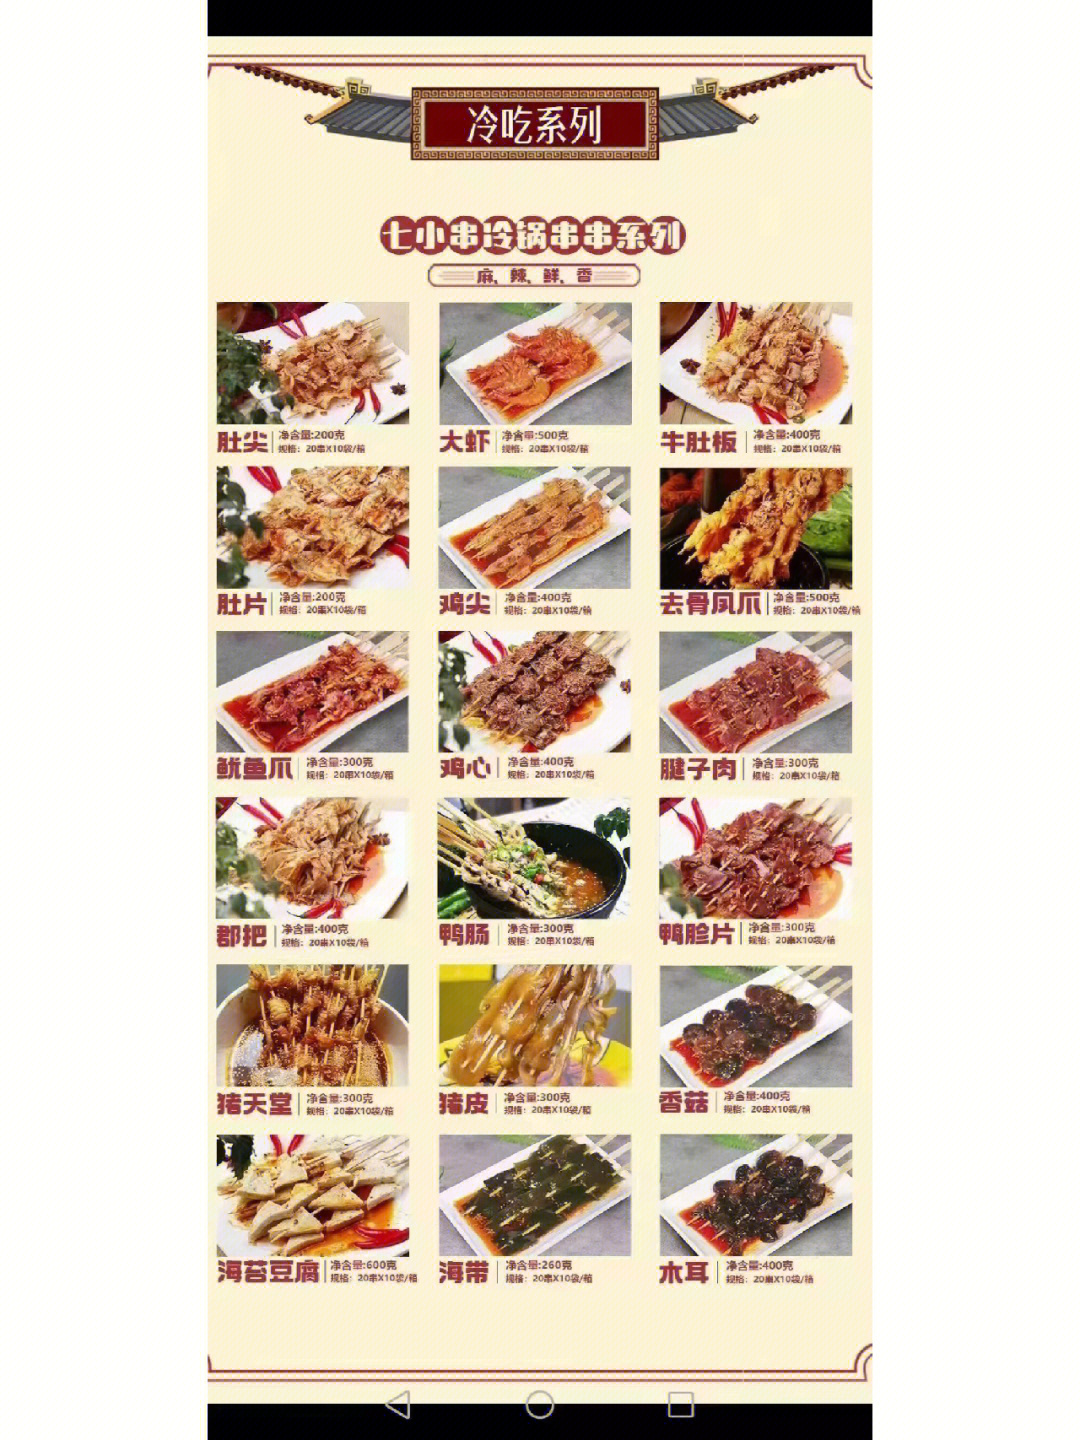 冷锅串串的菜品清单图片